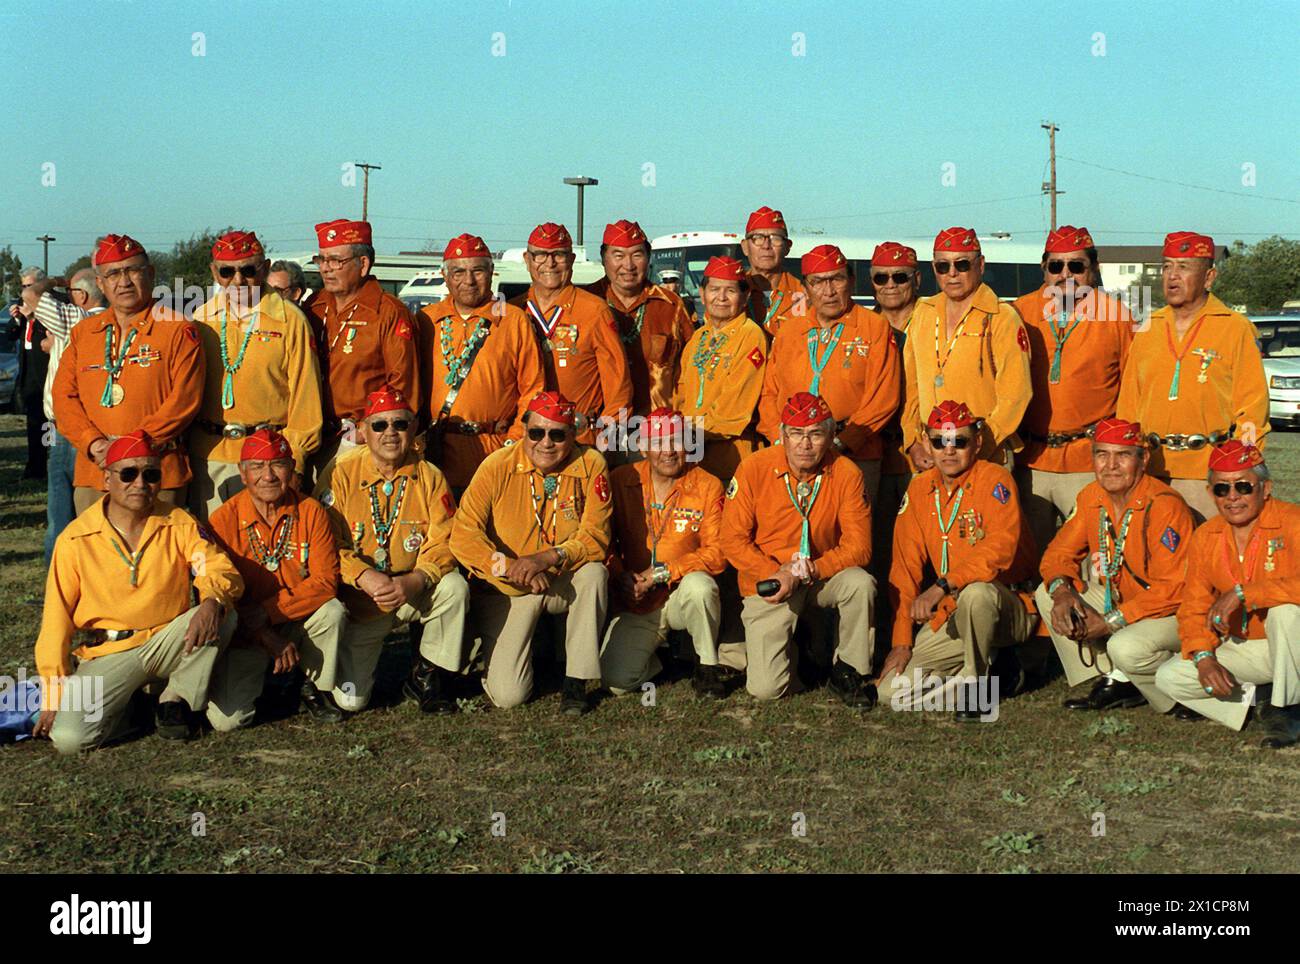 Mitglieder der 3. Und 4. Division Navajo Code-Sprecher-Platoons des Zweiten Weltkriegs posieren in Uniform ihrer Einheit für ein Gruppenfoto während einer Gedenkfeier der Landung auf Iwo Jima. 2/21/1987. Foto vom USMC/Camp Pendleton CA Marine Corps Base Camp Stockfoto